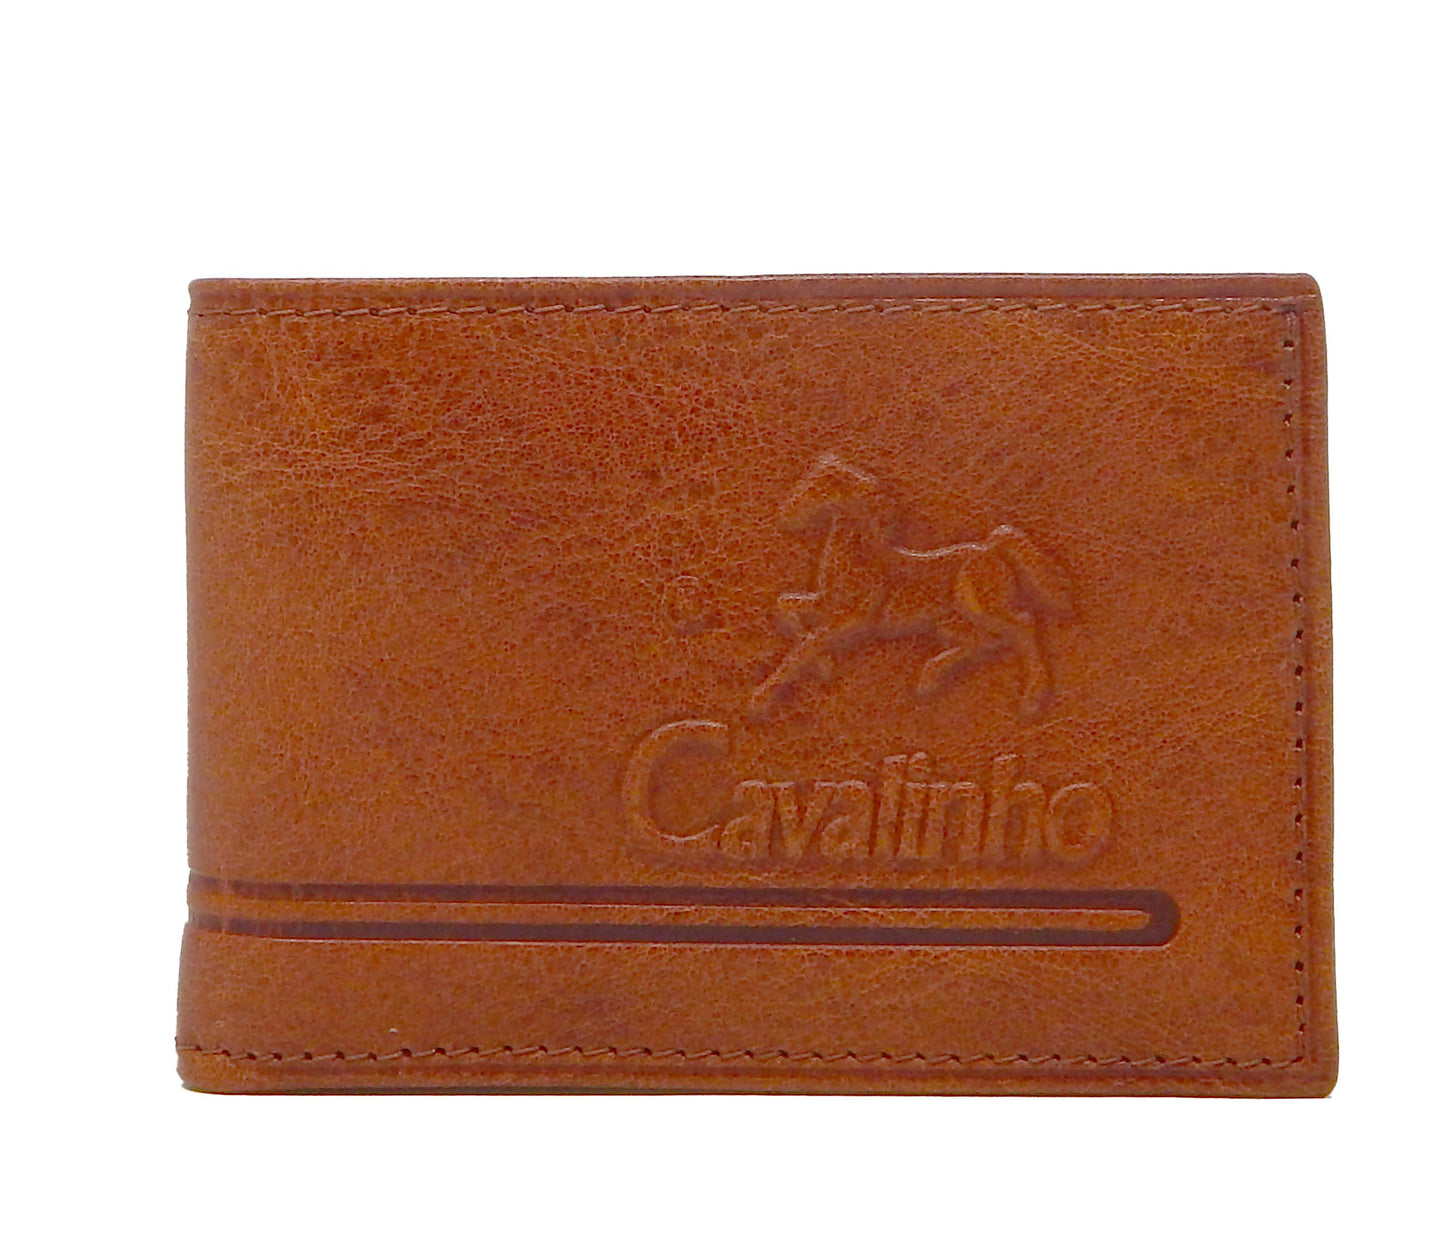 Cavalinho Men's Bifold Leather Wallet - SaddleBrown - 28610585.13.99_1